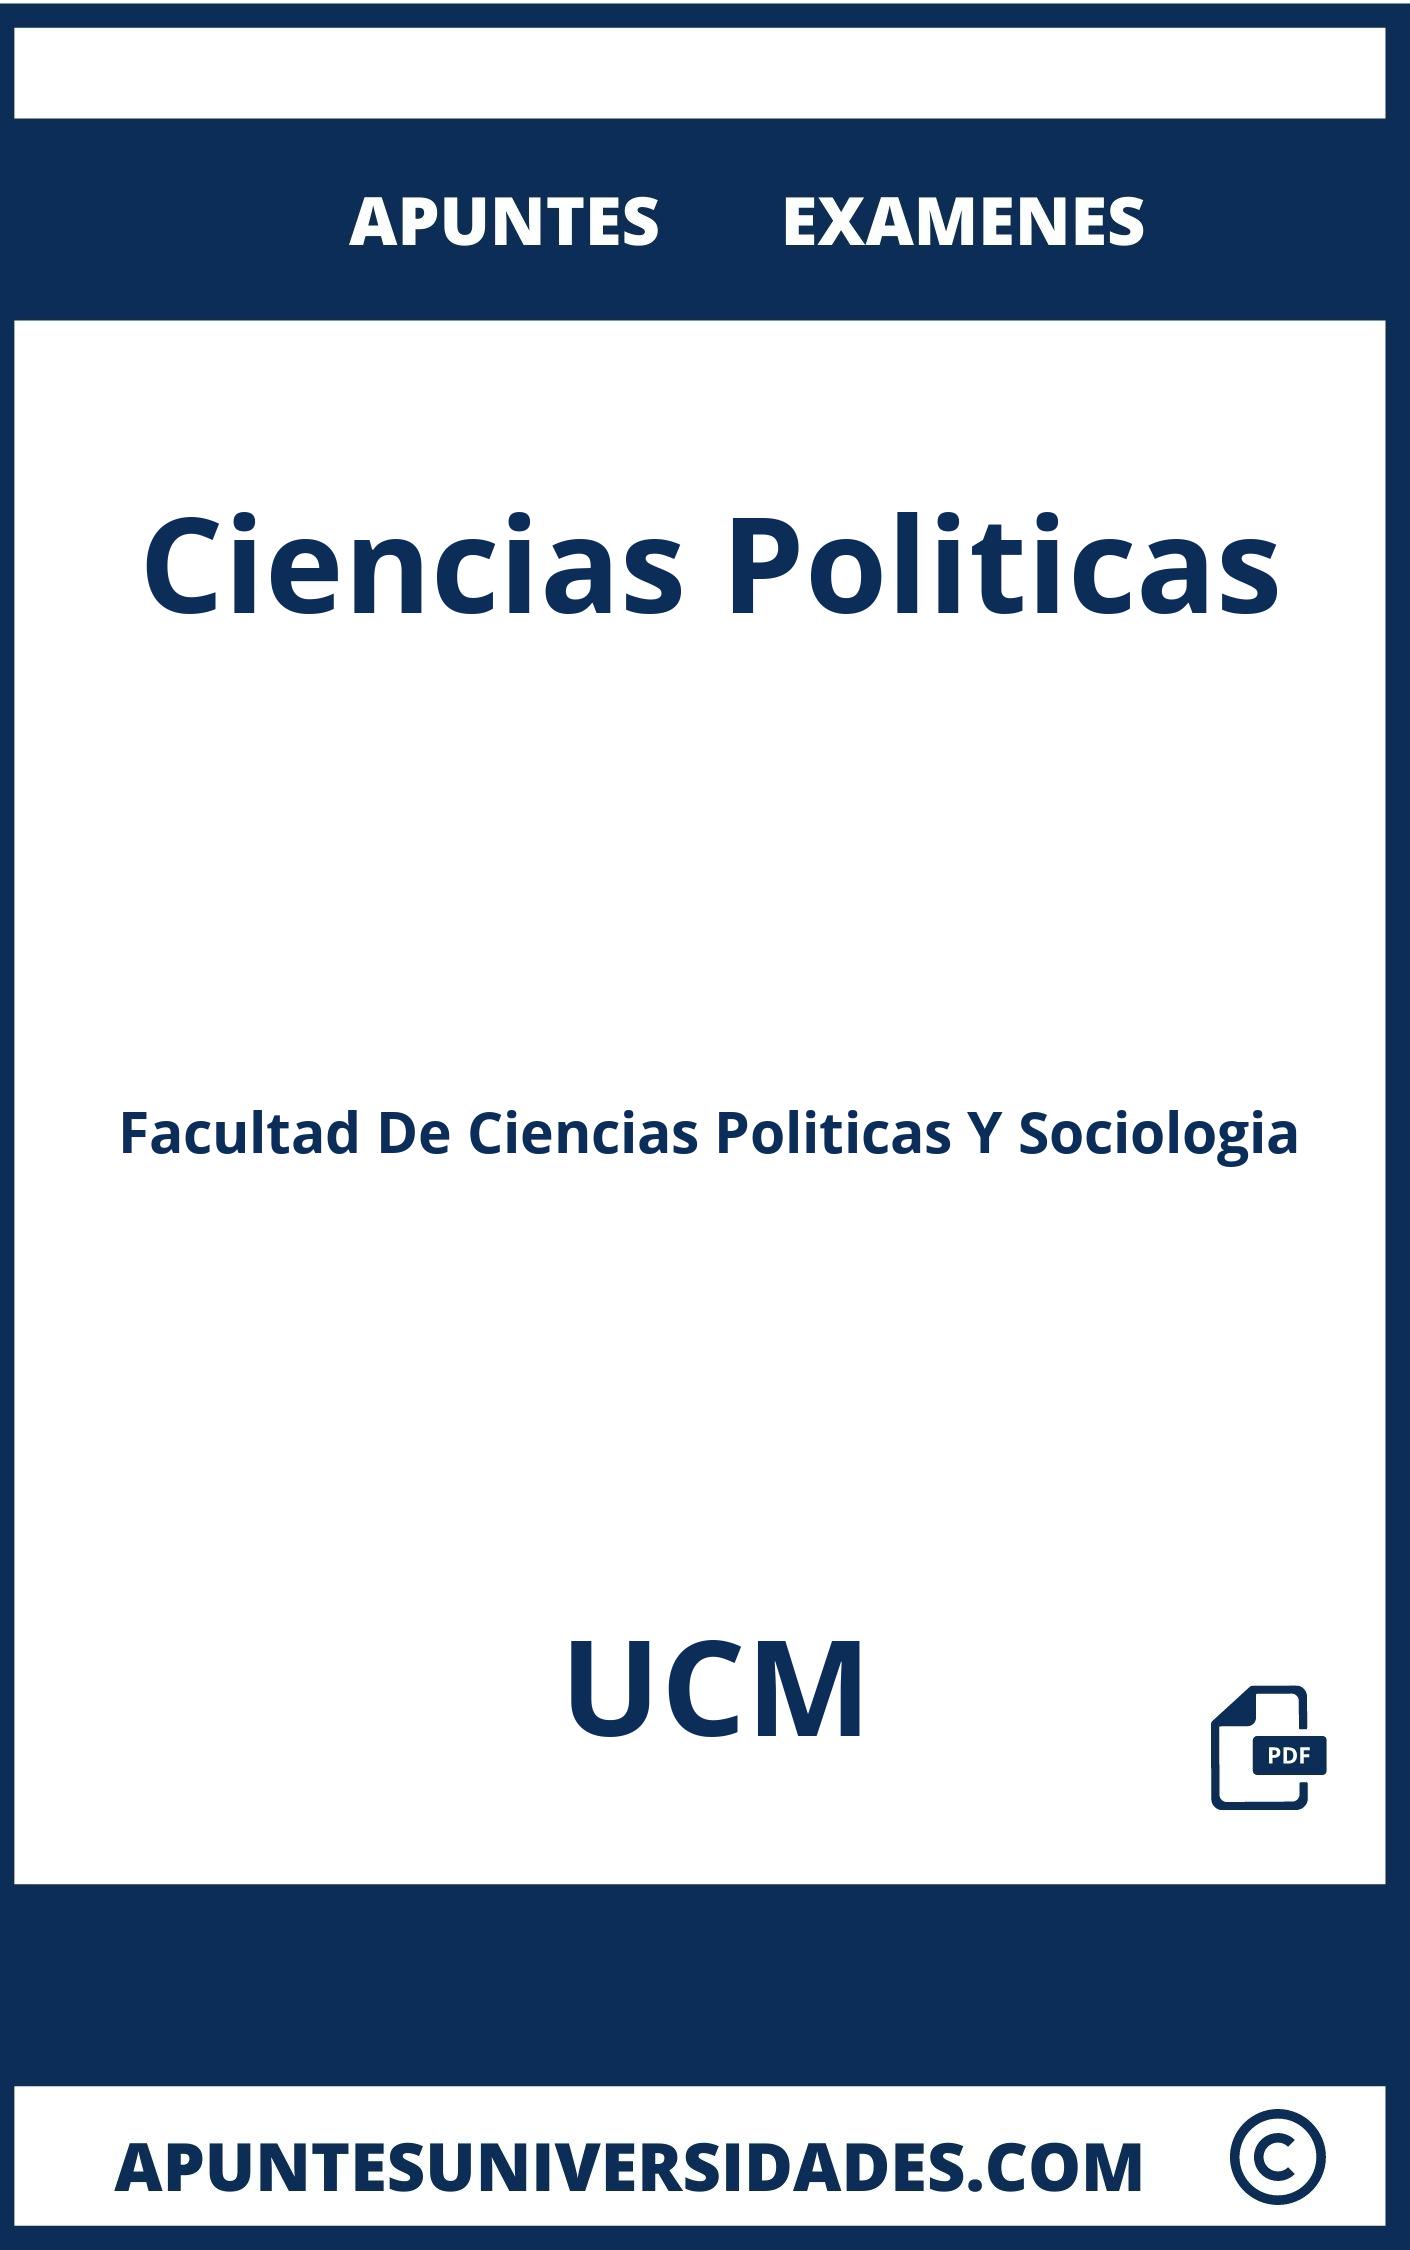 Apuntes Ciencias Politicas UCM y Examenes